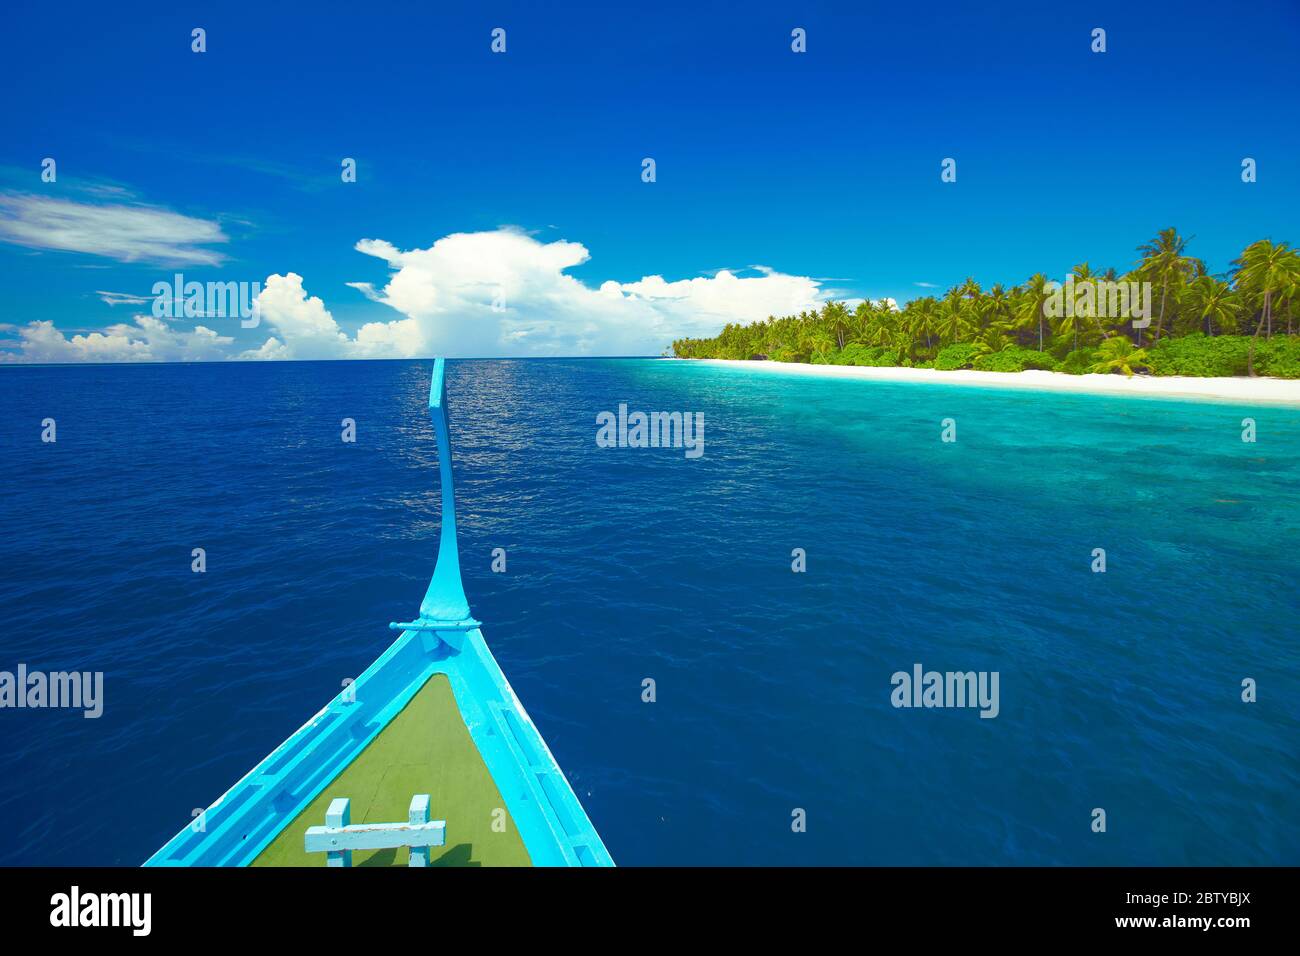 Bateau de pêche maldivien (dhoni) et île tropicale, Maldives, Océan Indien, Asie Banque D'Images